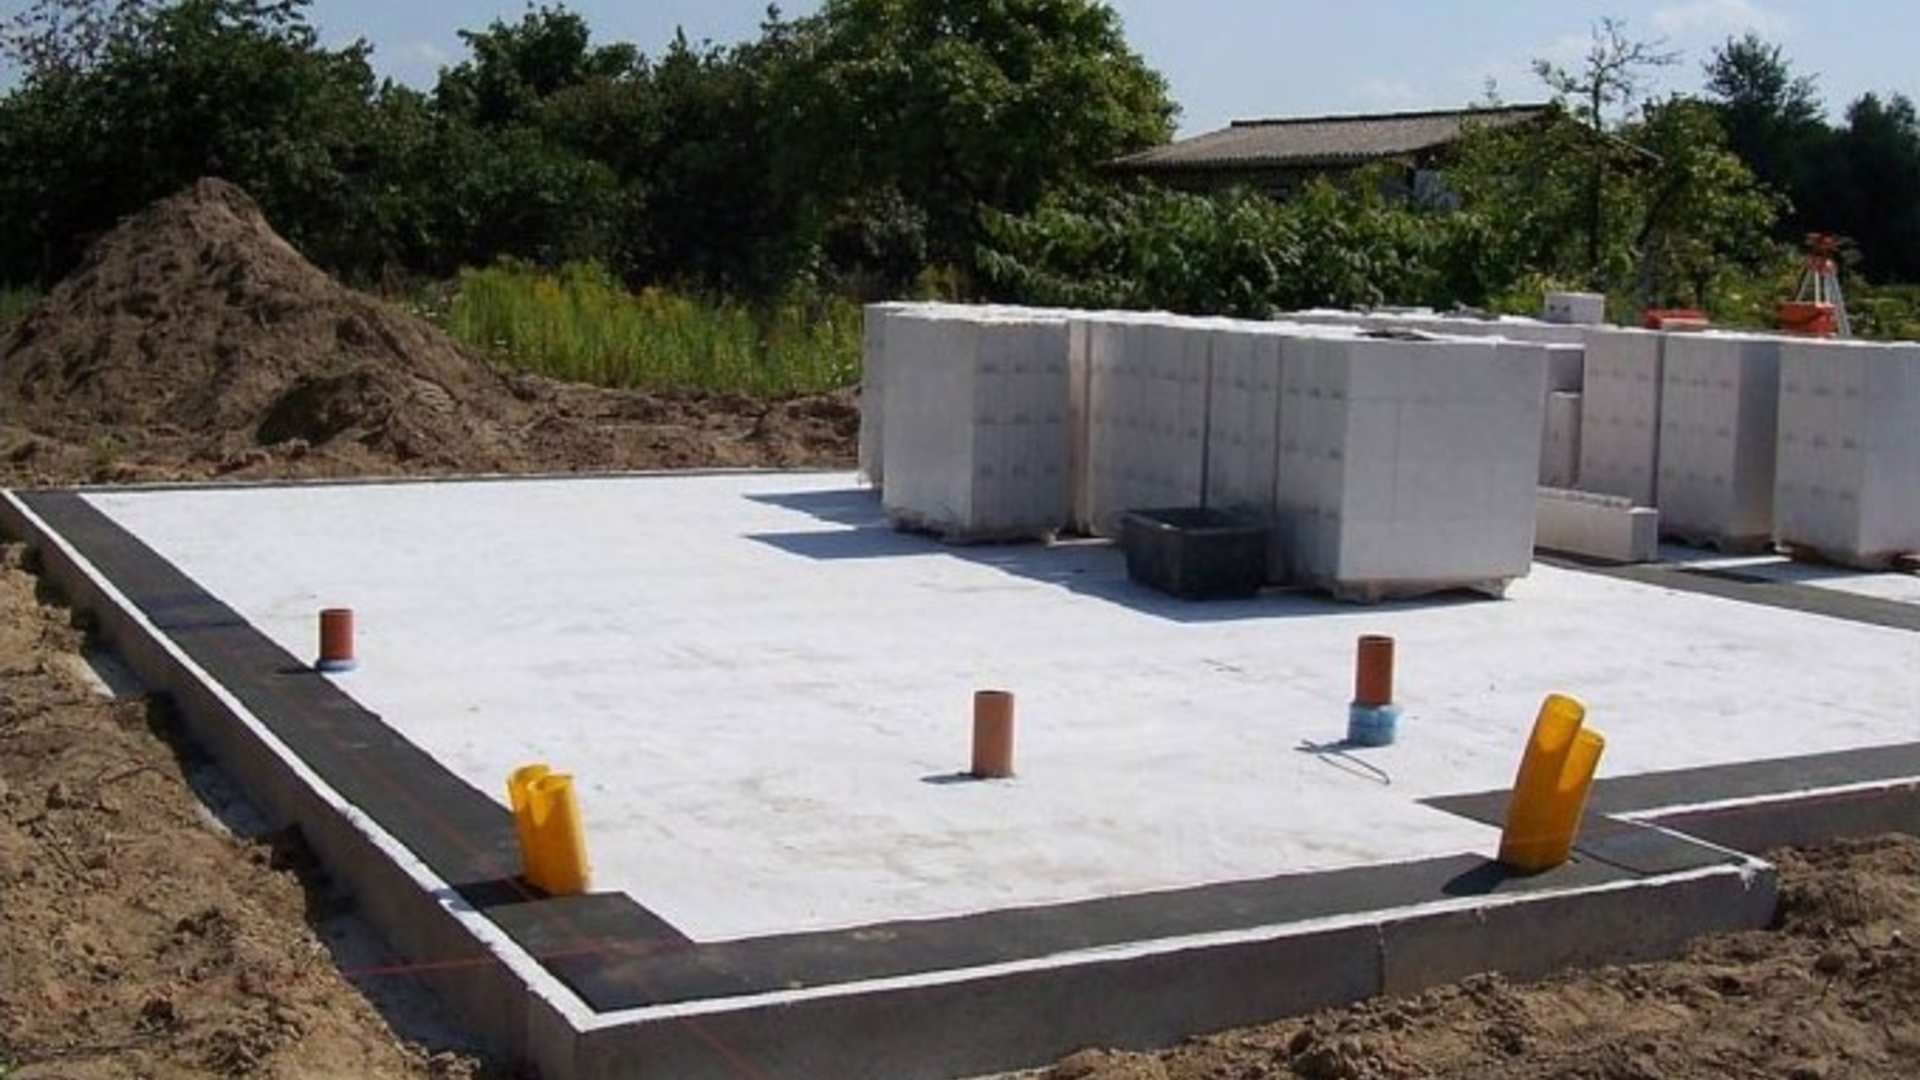 Ленточный фундамент для дома из газобетона (в 1 и 2 этажа): как рассчитать ширину ленты, сделать проект, возвести своими руками?